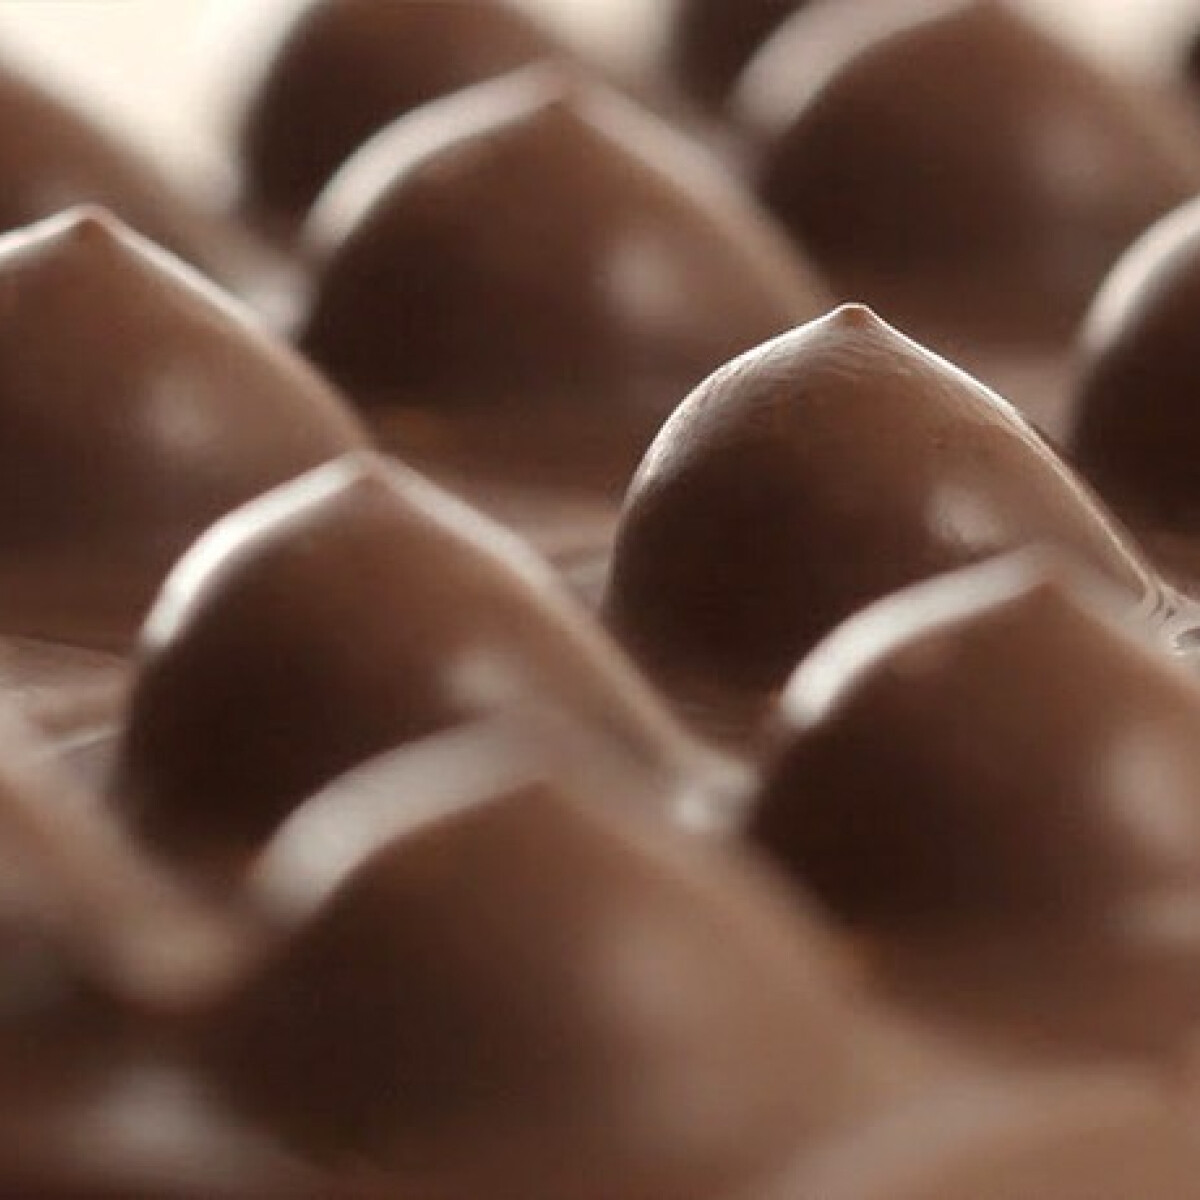 CICIS csokit dobtak piacra, több méretben - sértő vagy nem?